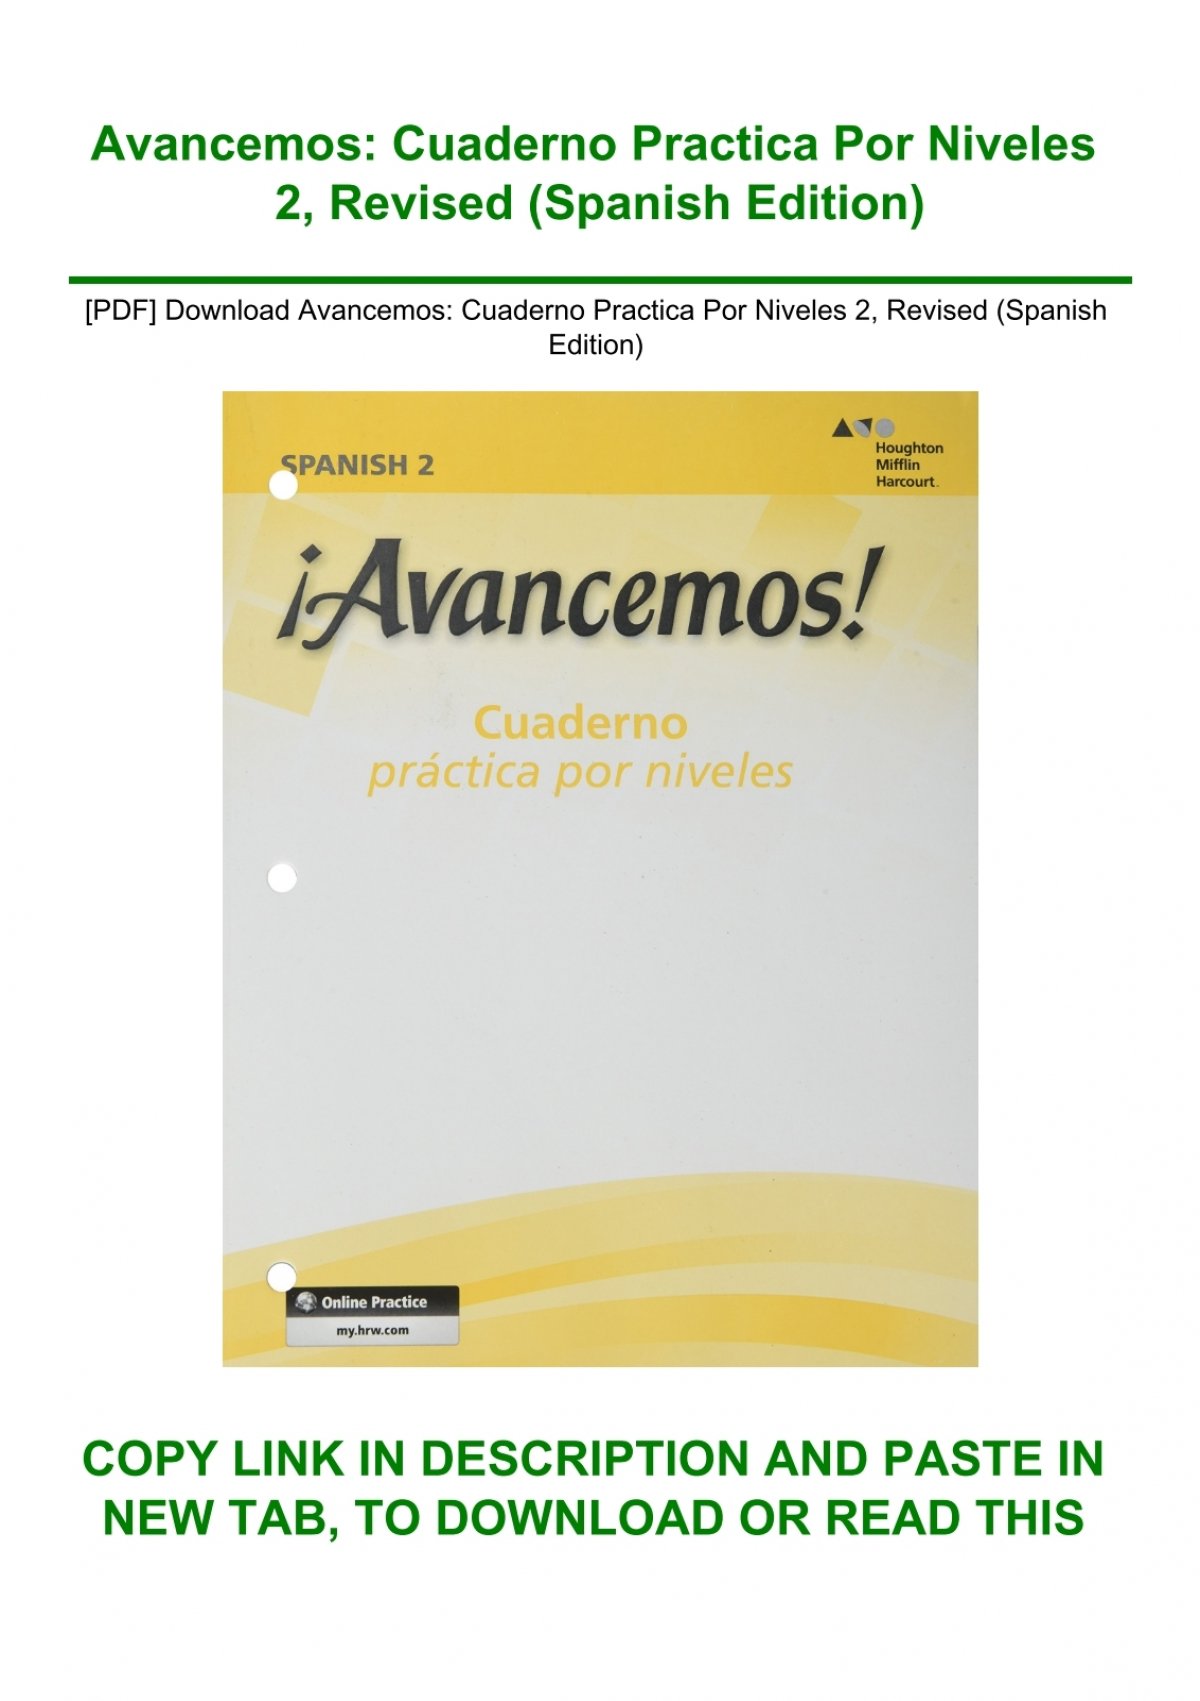 pdf-download-avancemos-cuaderno-practica-por-niveles-2-revised